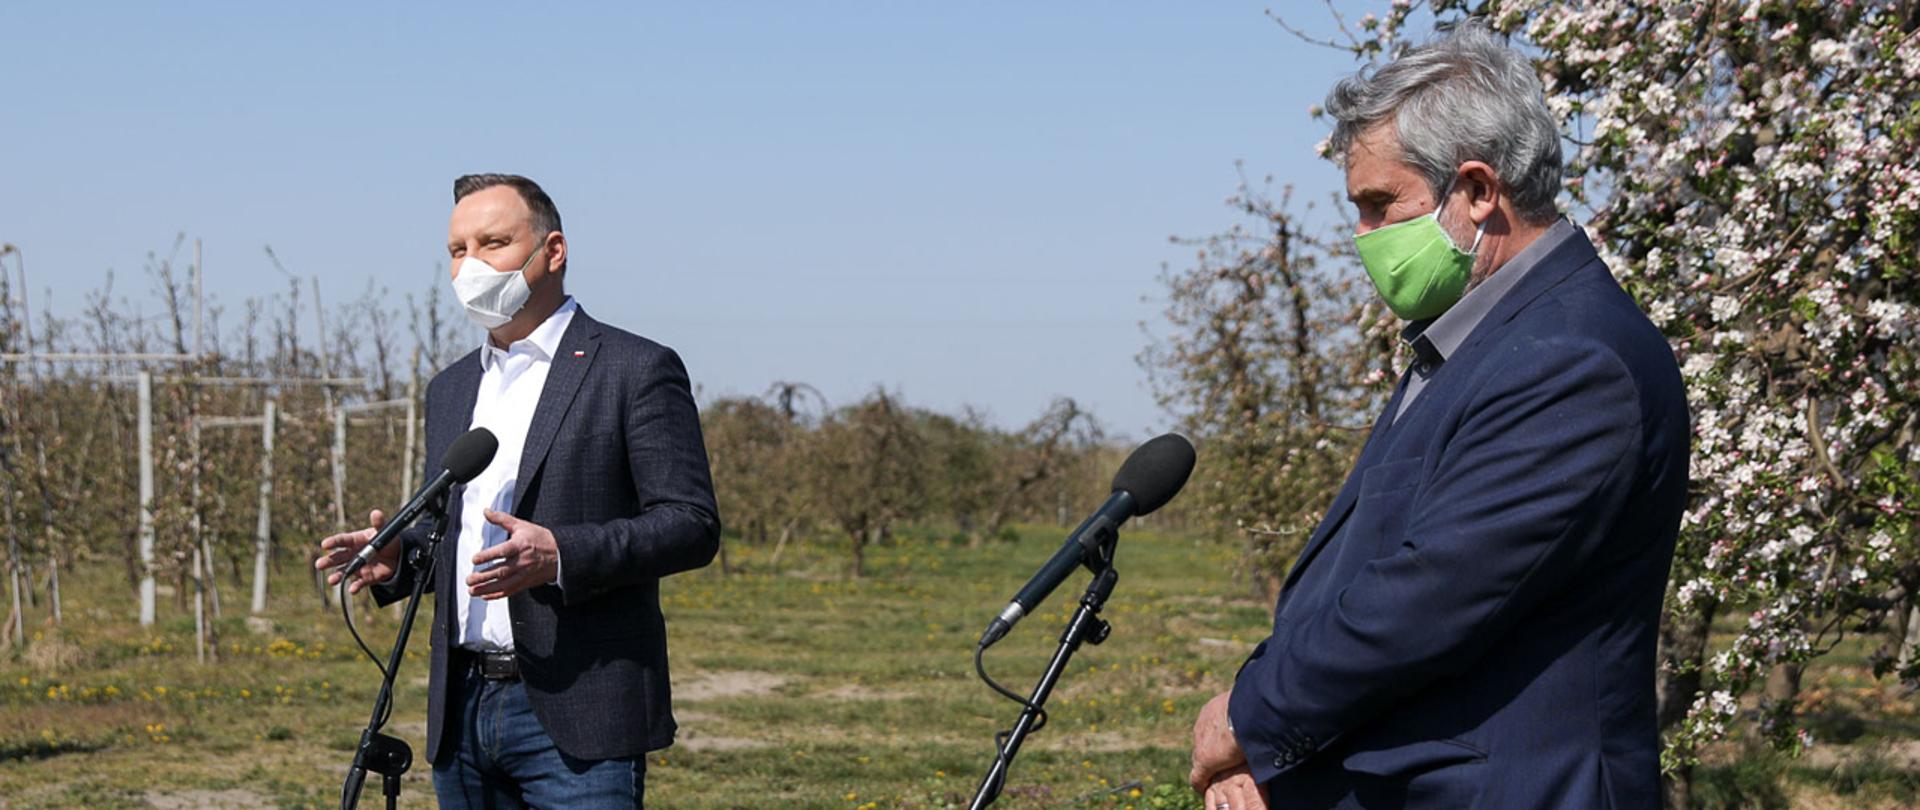 Spotkanie Prezydenta A. Dudy i ministra J. K. Ardanowskiego z sadownikami w Dylewie